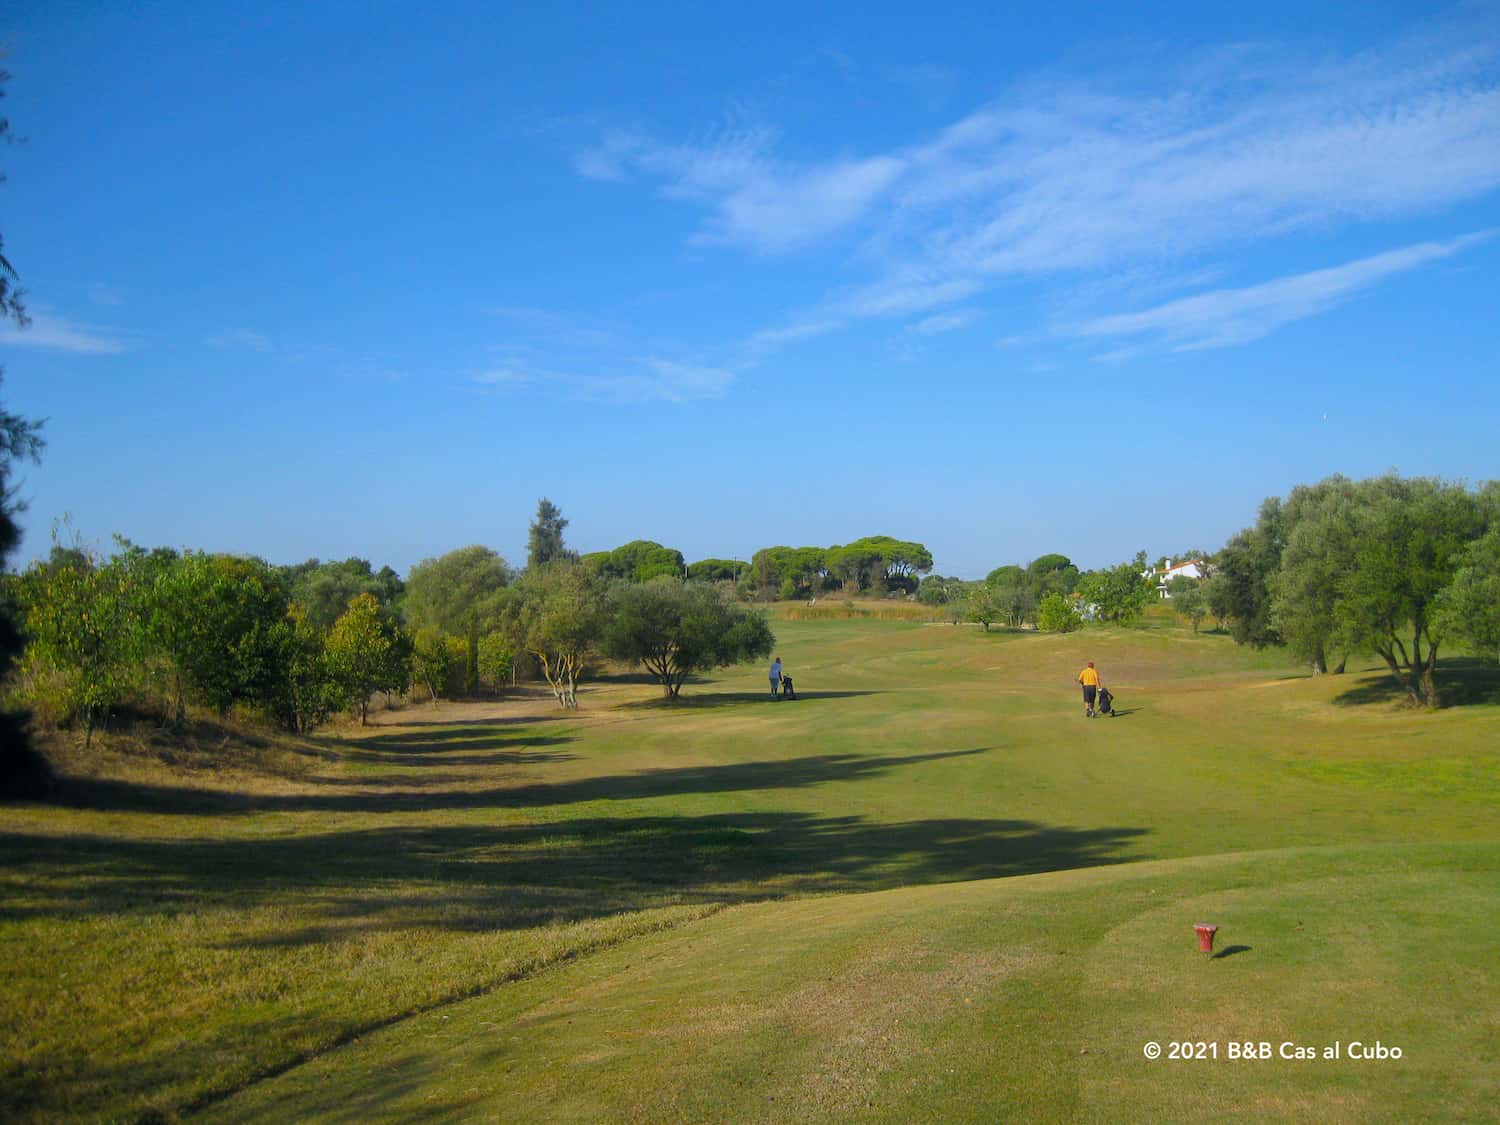 De green met golfers bij Benamor Golfbaan